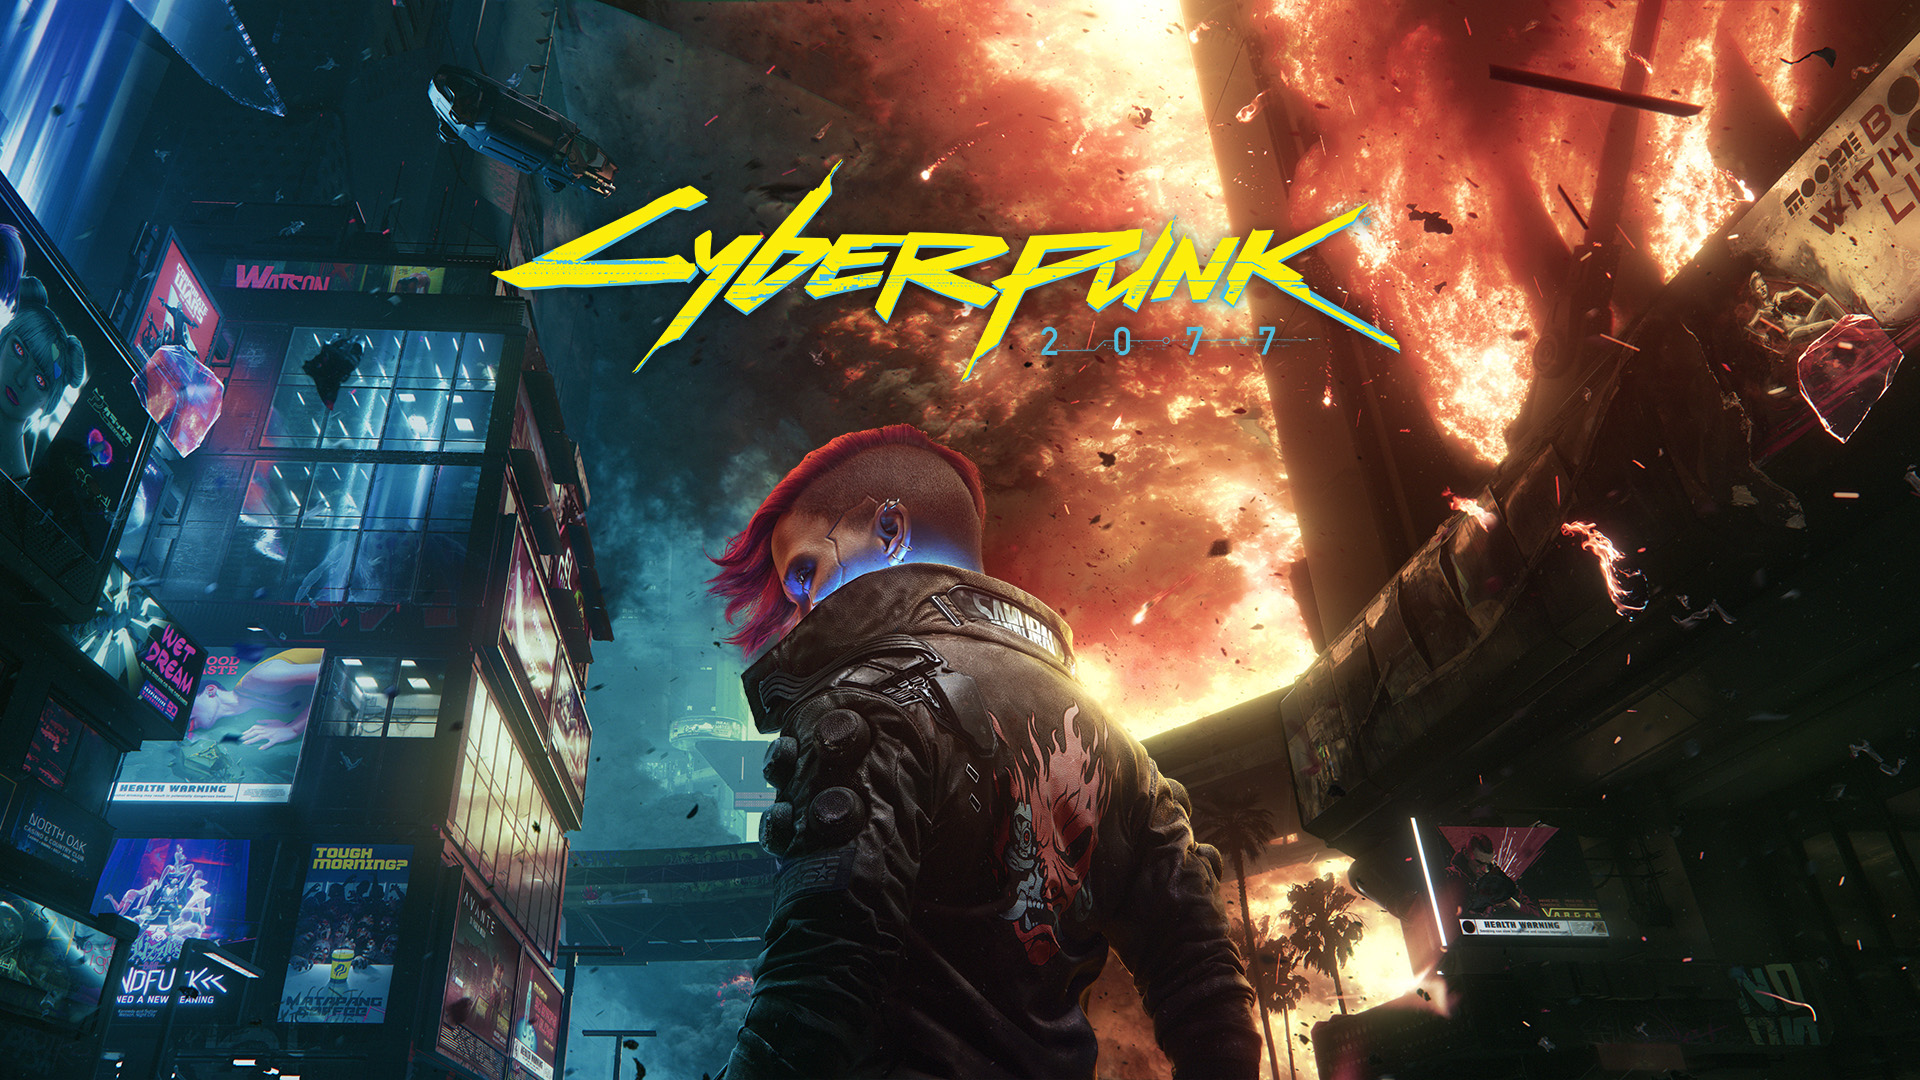 Cyberpunk: edgerunners, Cyberpunk 2077, CD Projekt RED, trigger HD wallpaper  in 2023